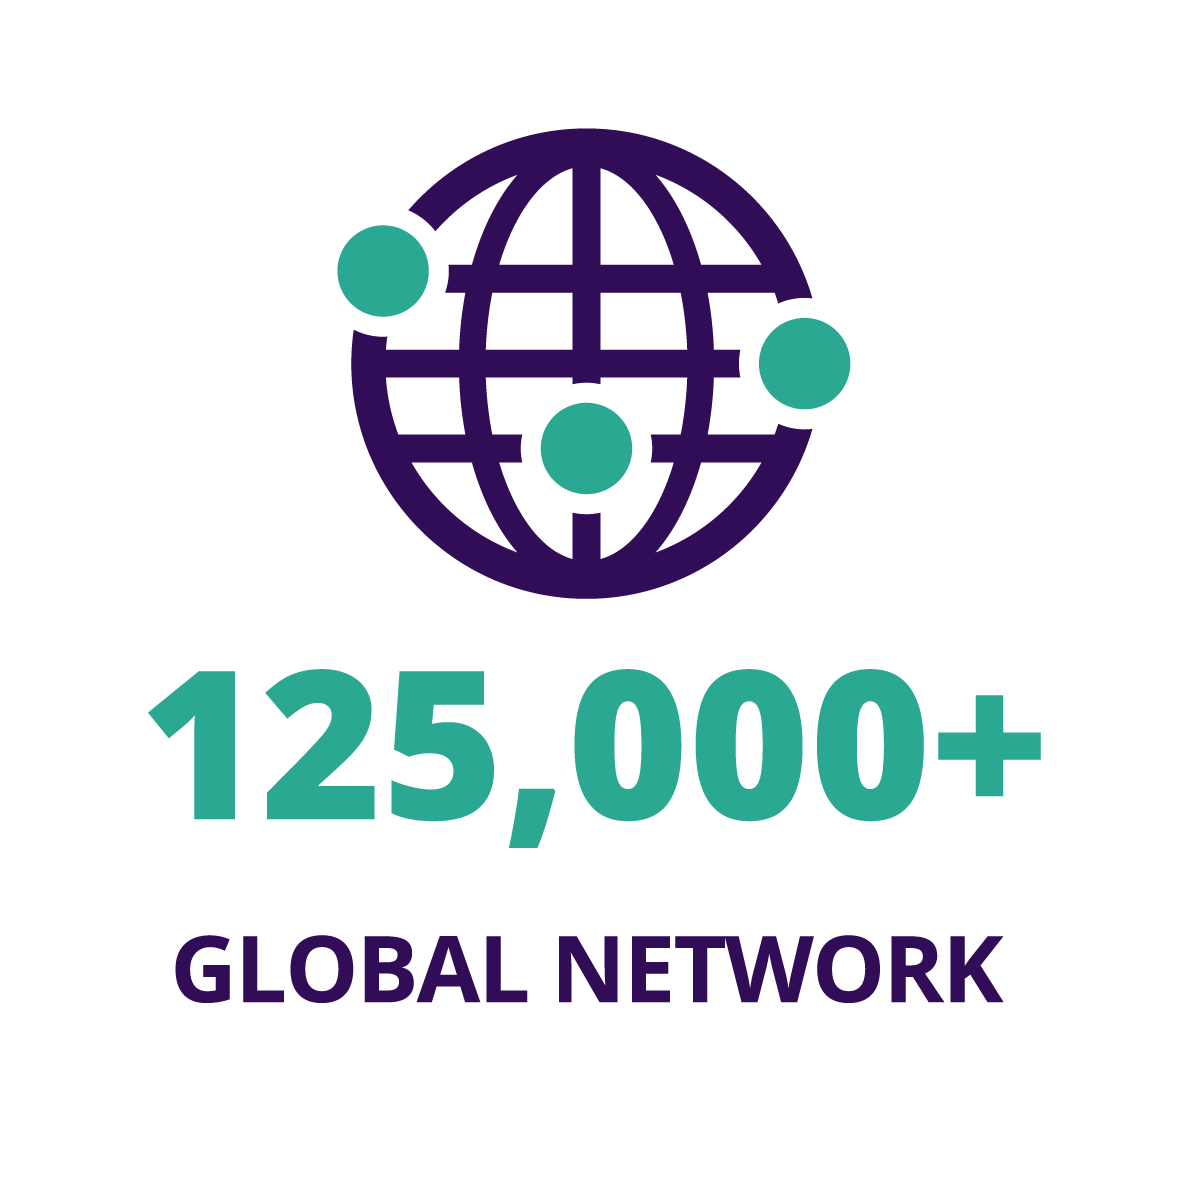 125,000+ Global network